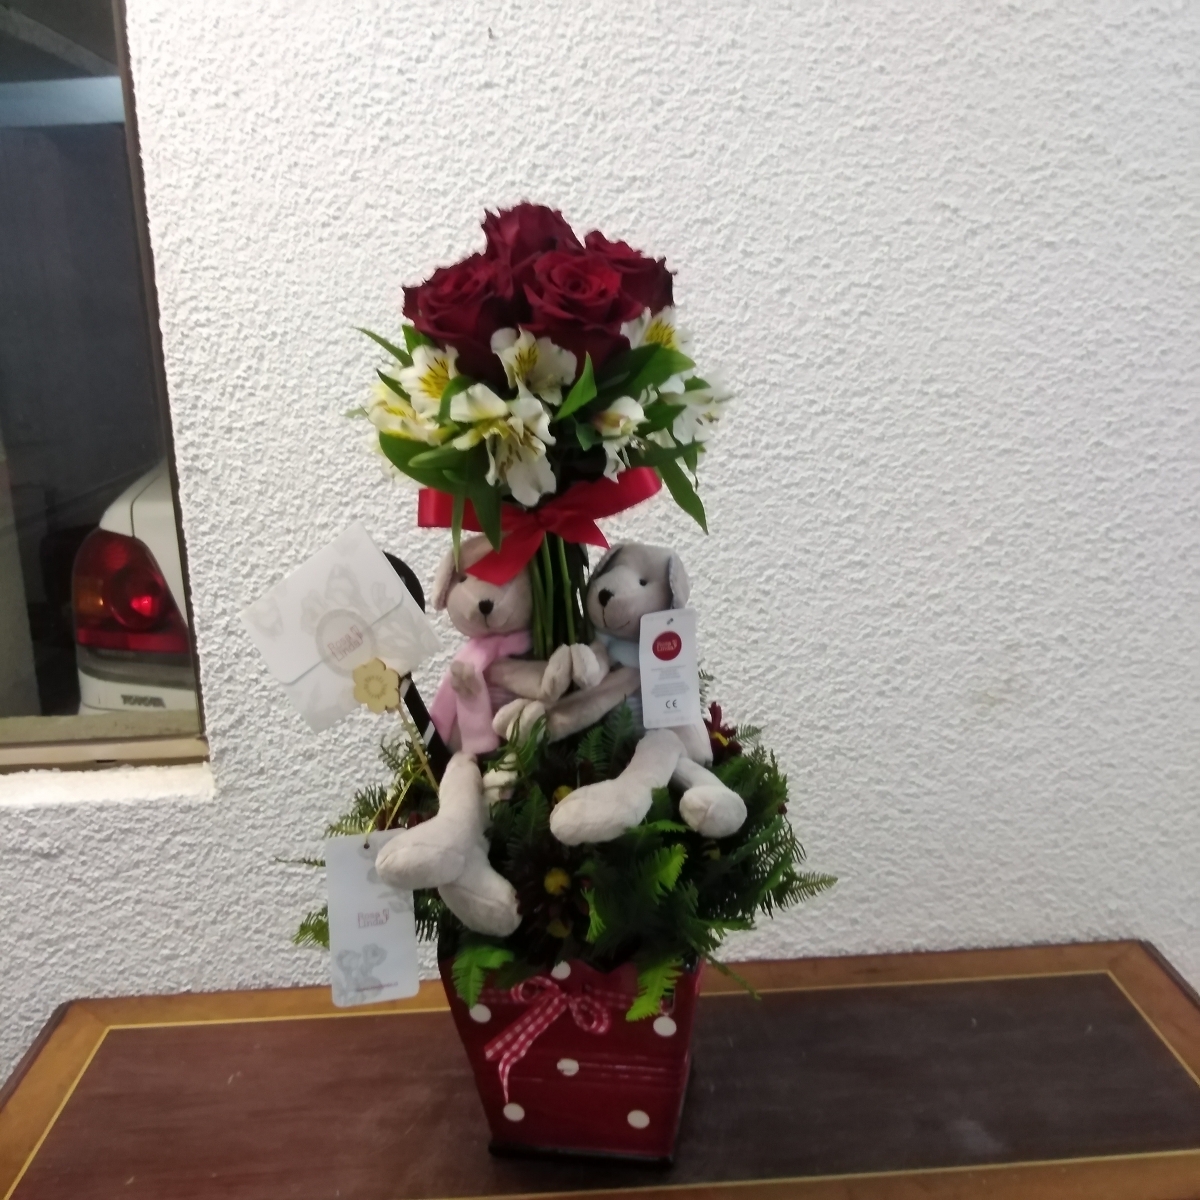 Arbolito de enamorados - Arreglo floral con rosas rojas, astromelias, maules y peluches de ositos - Pedido 253198